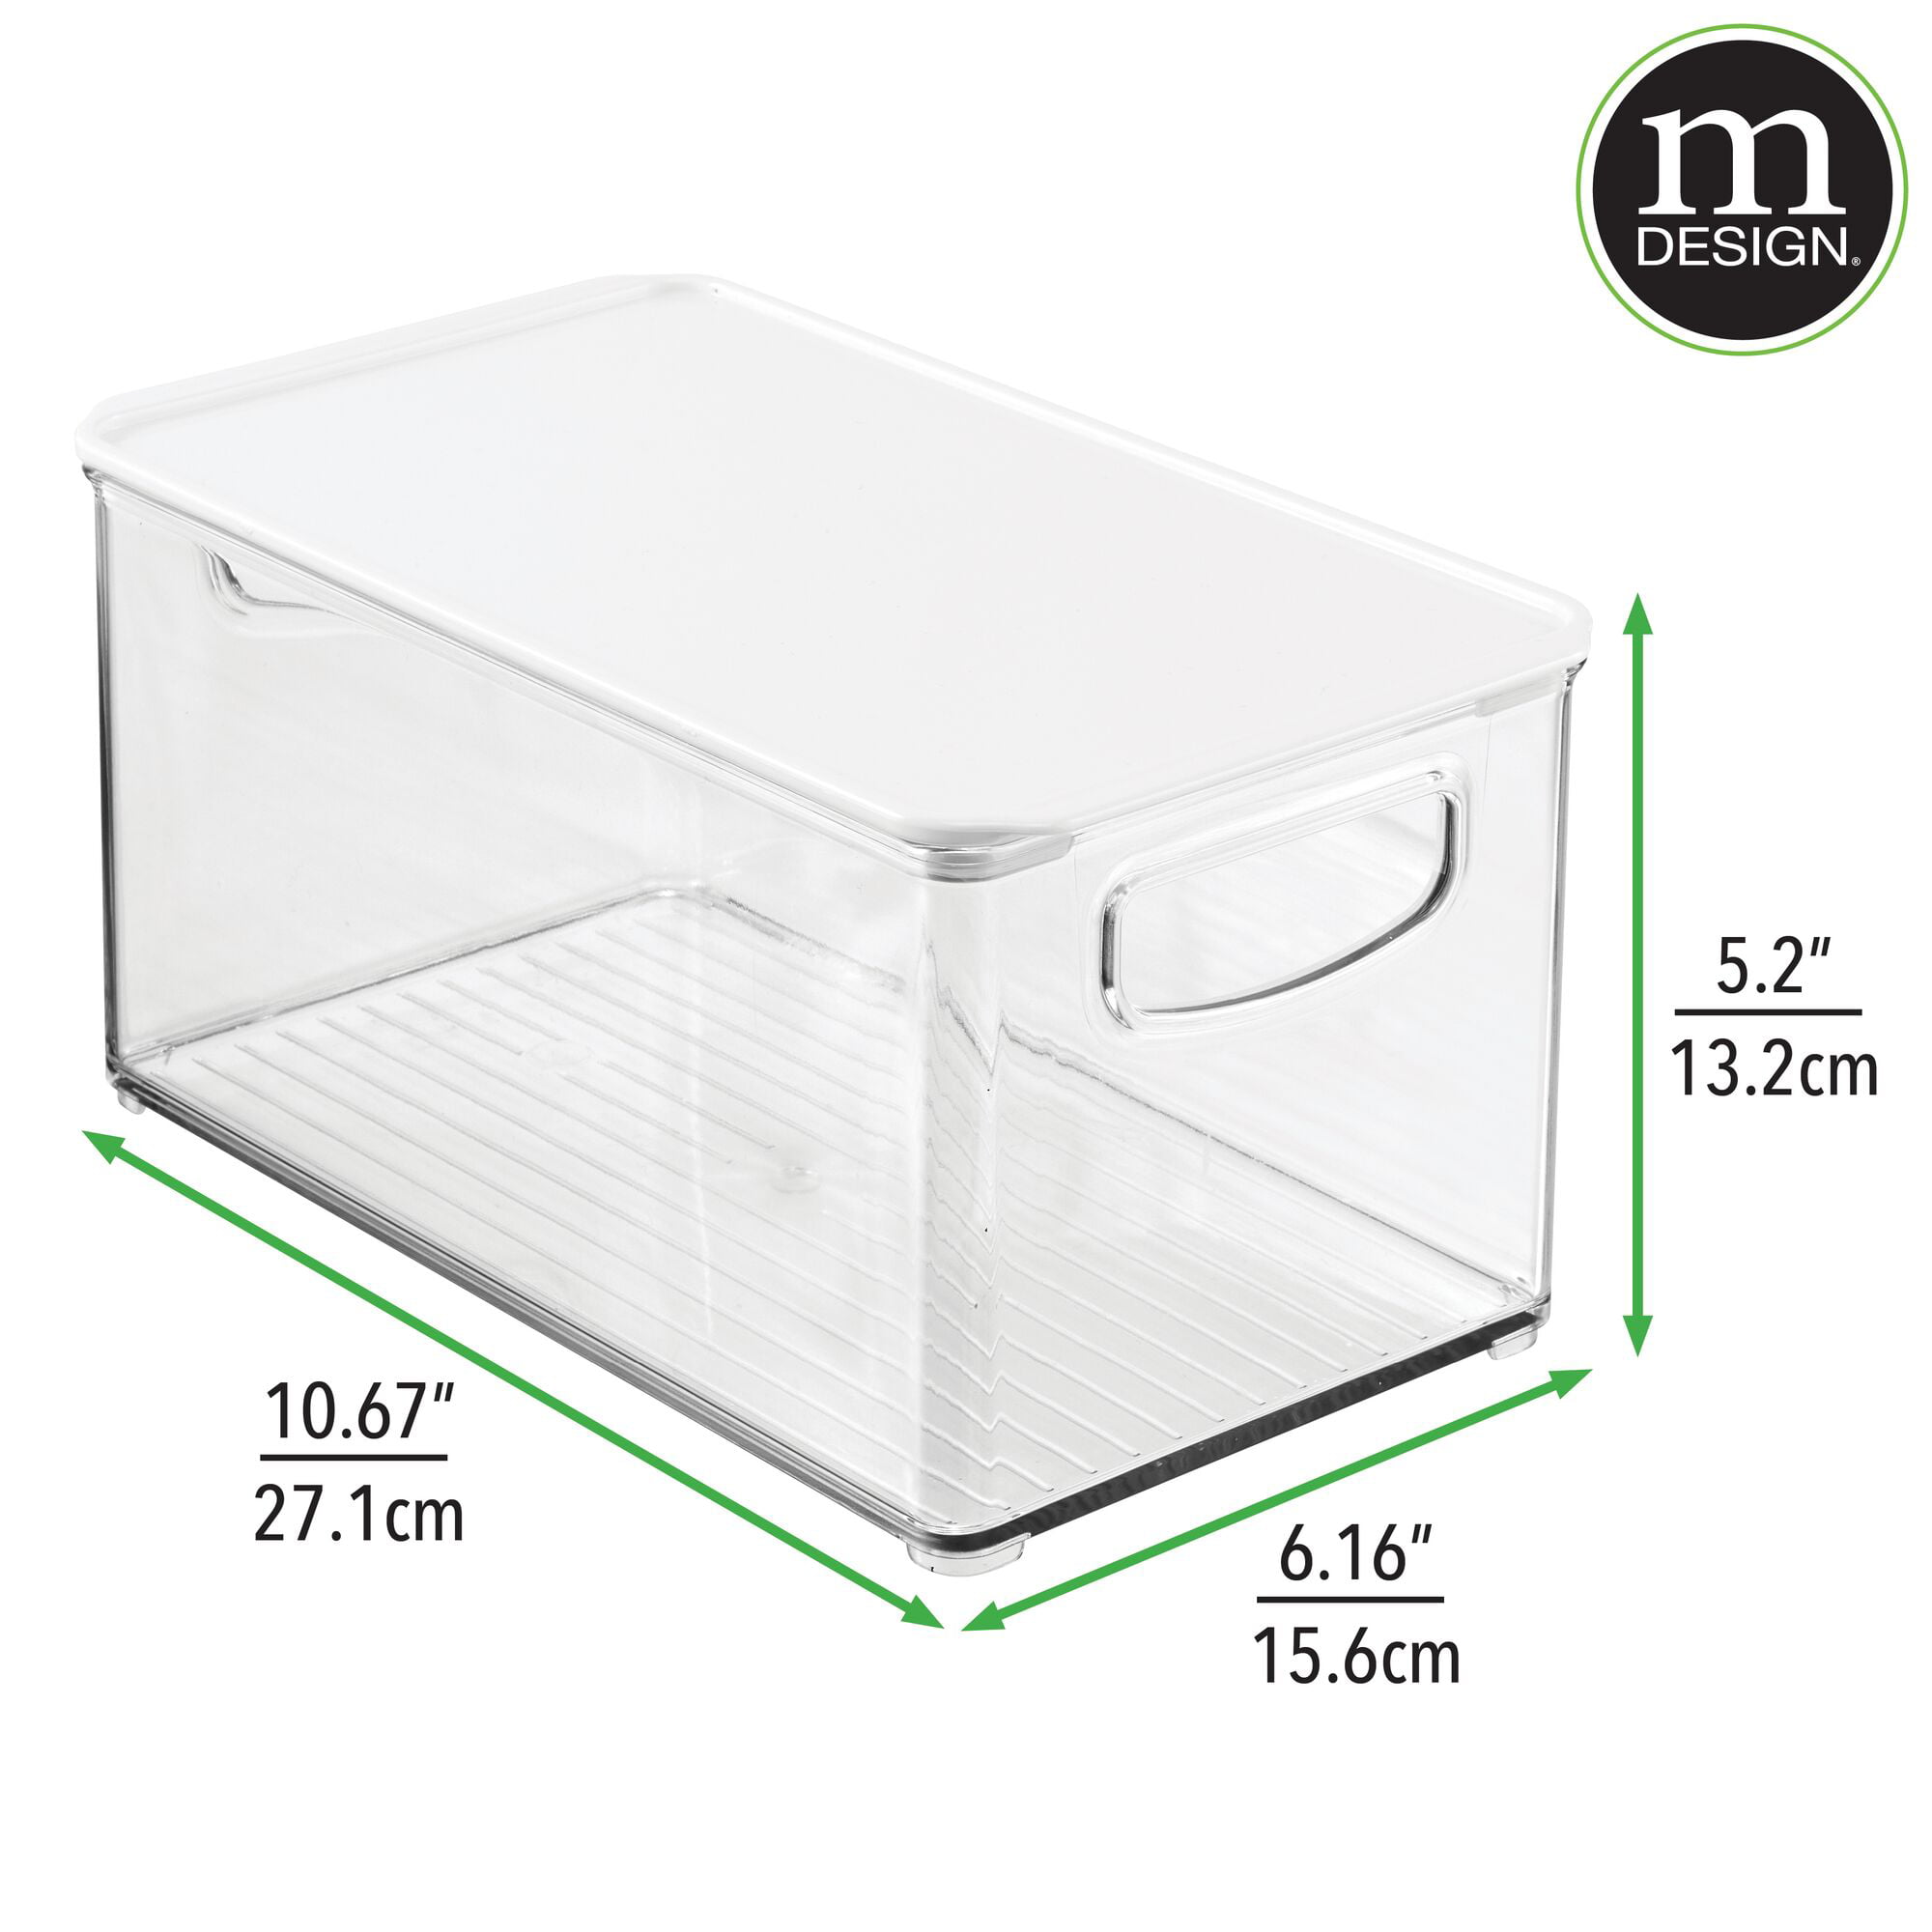 Confetti Small Plastic Storage Bin, 7 3/4 x 11 1/2 x 5 Inches, Mardel